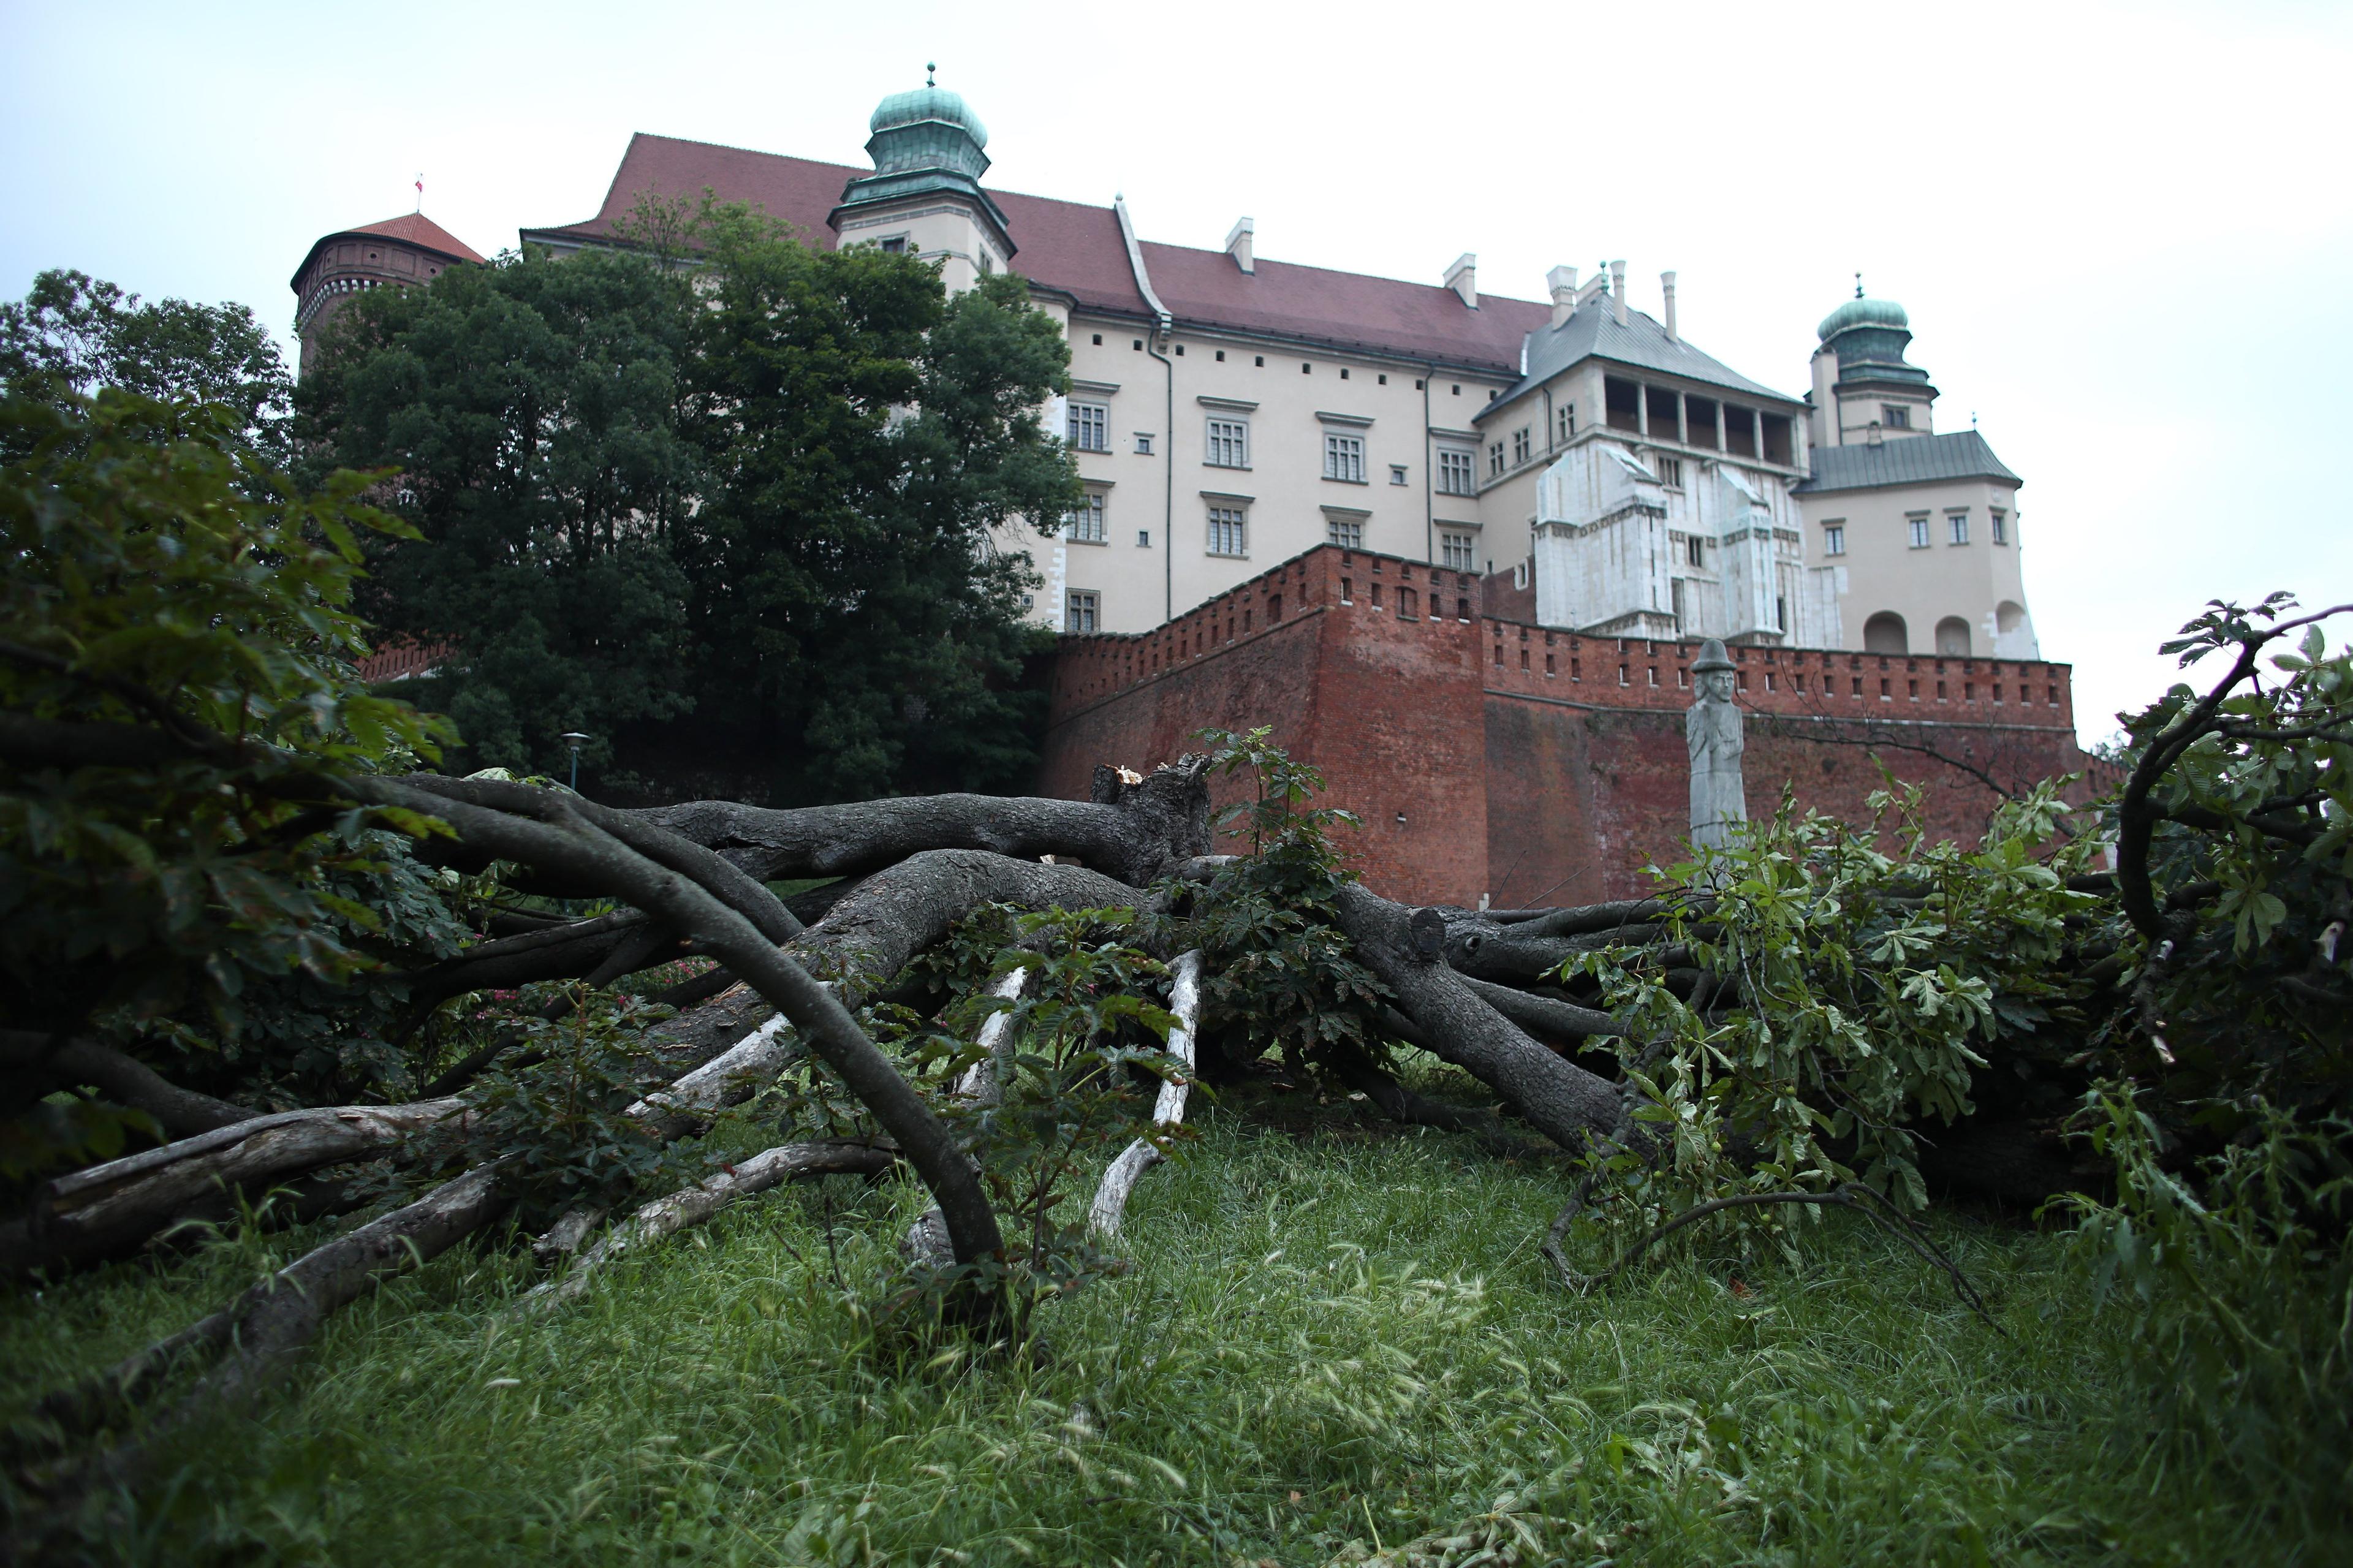 Powalone drzewo, w tle widok na Wawel.